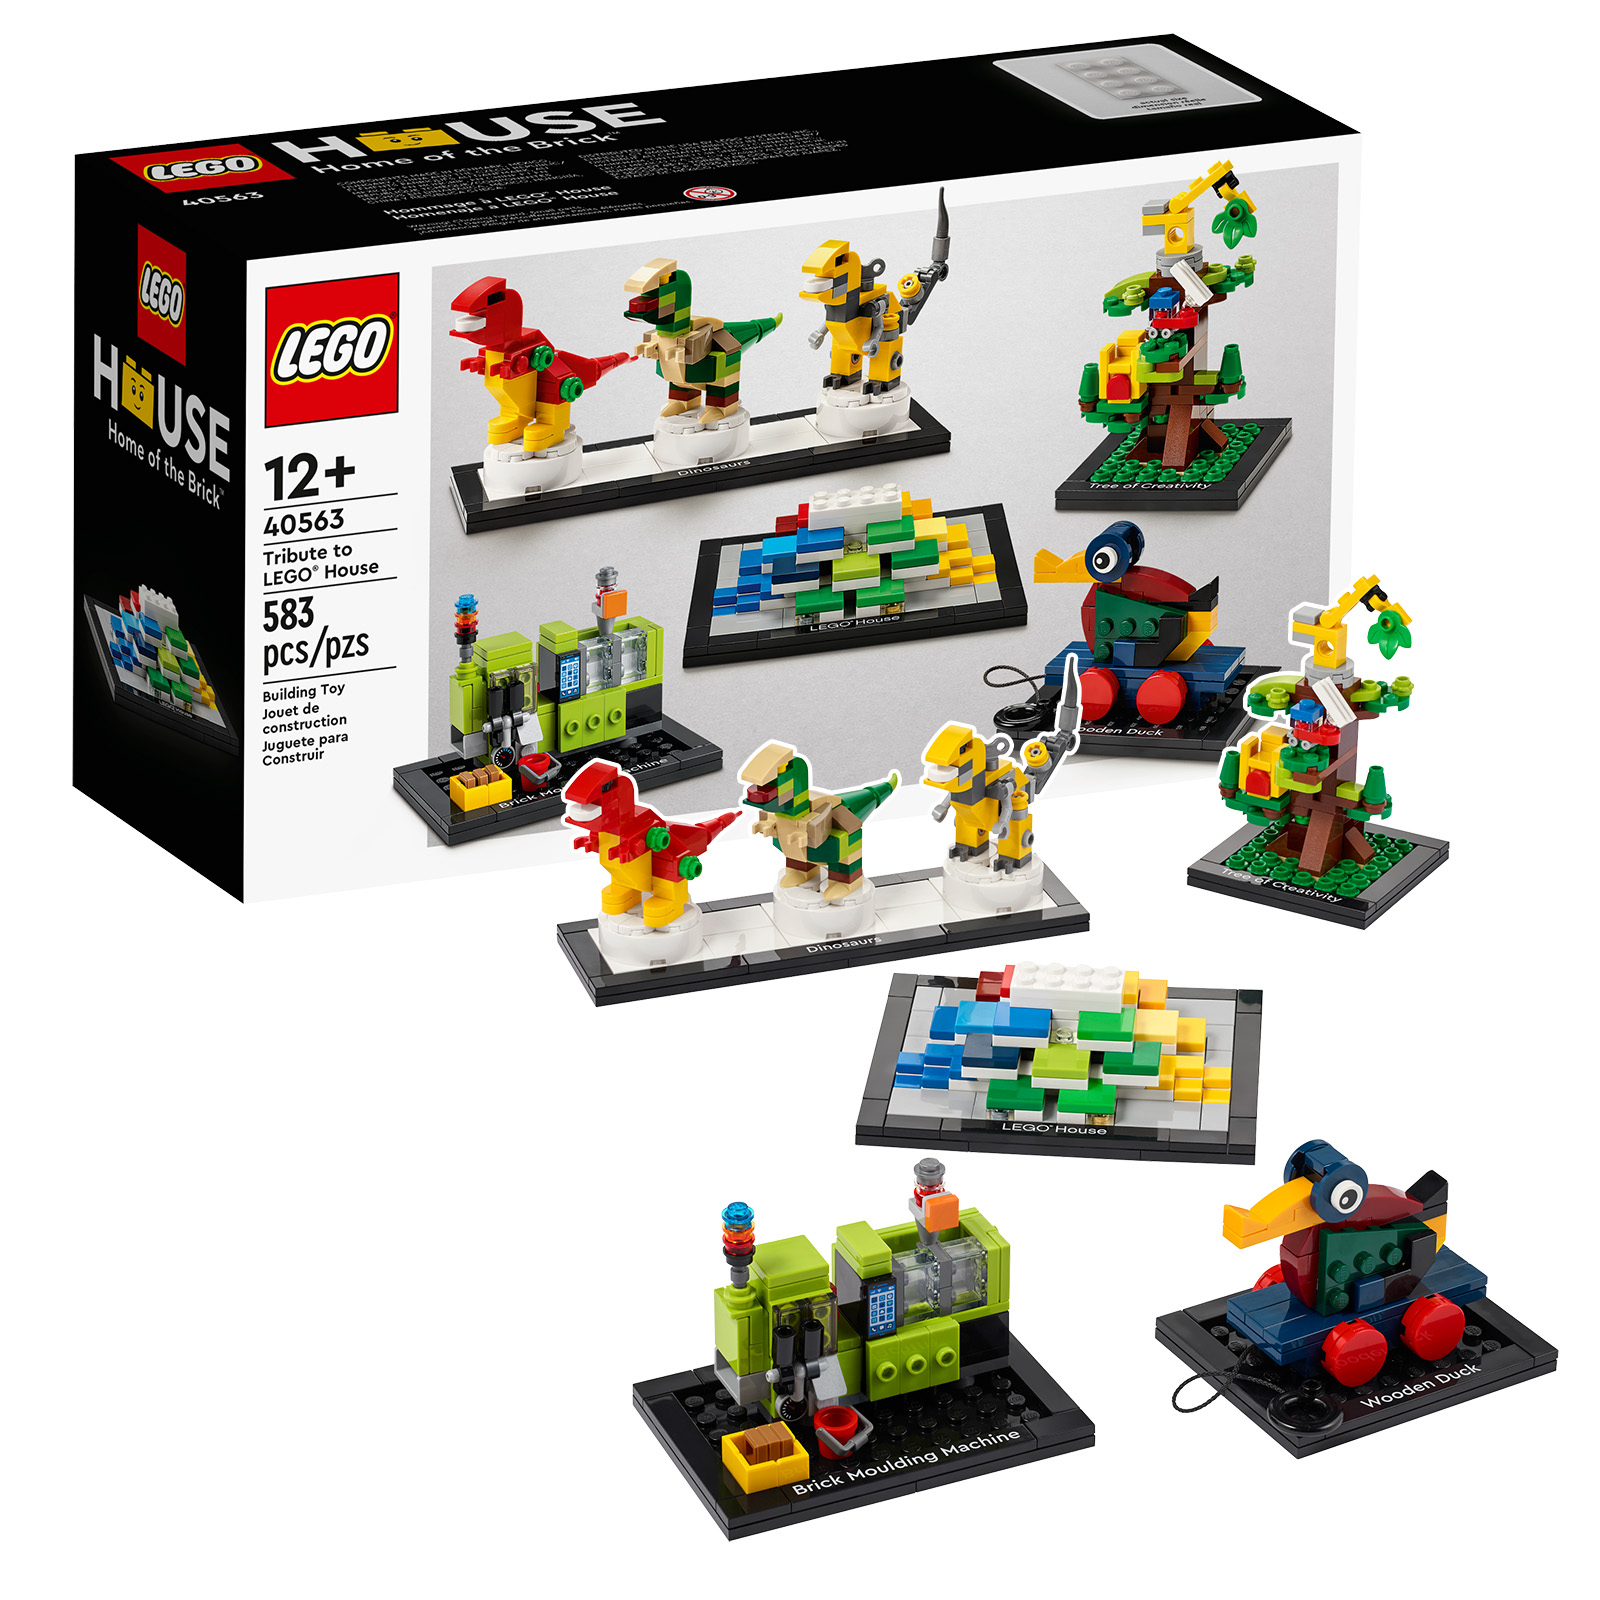 リマインダー: レゴ 40563 トリビュート トゥ レゴ ハウス セットのコピーを入手できる最後の時間